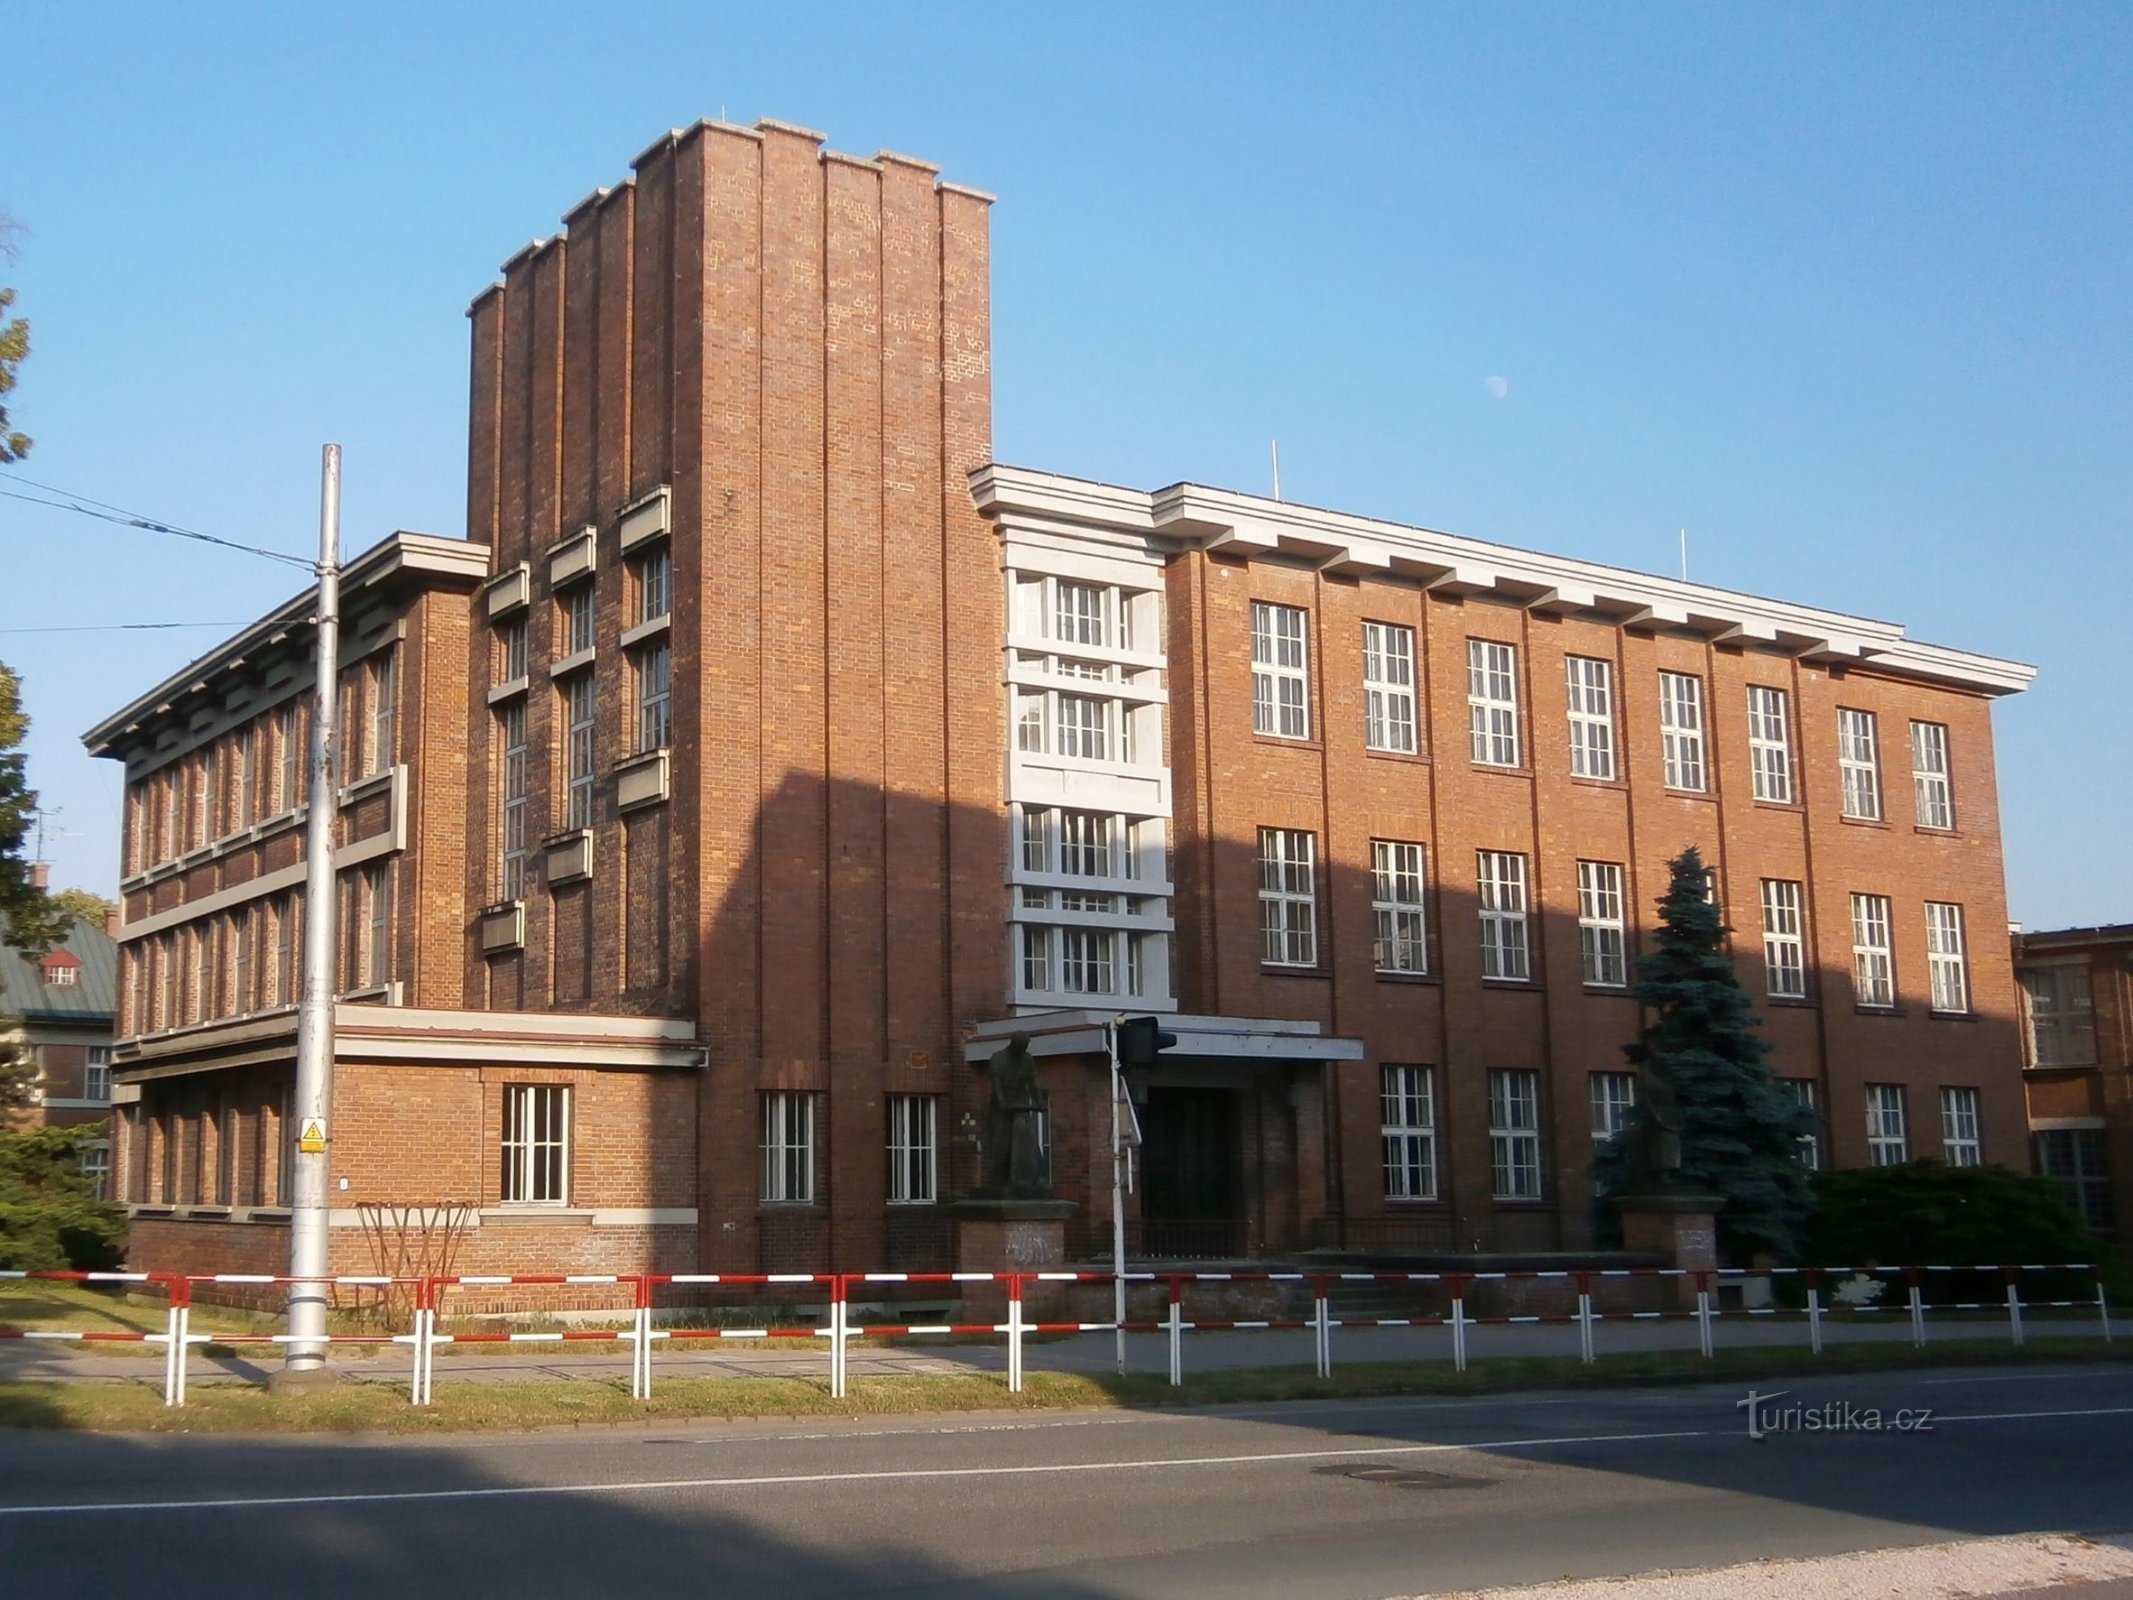 Бывшая кожевенная школа (Градец Кралове, 19.6.2013)